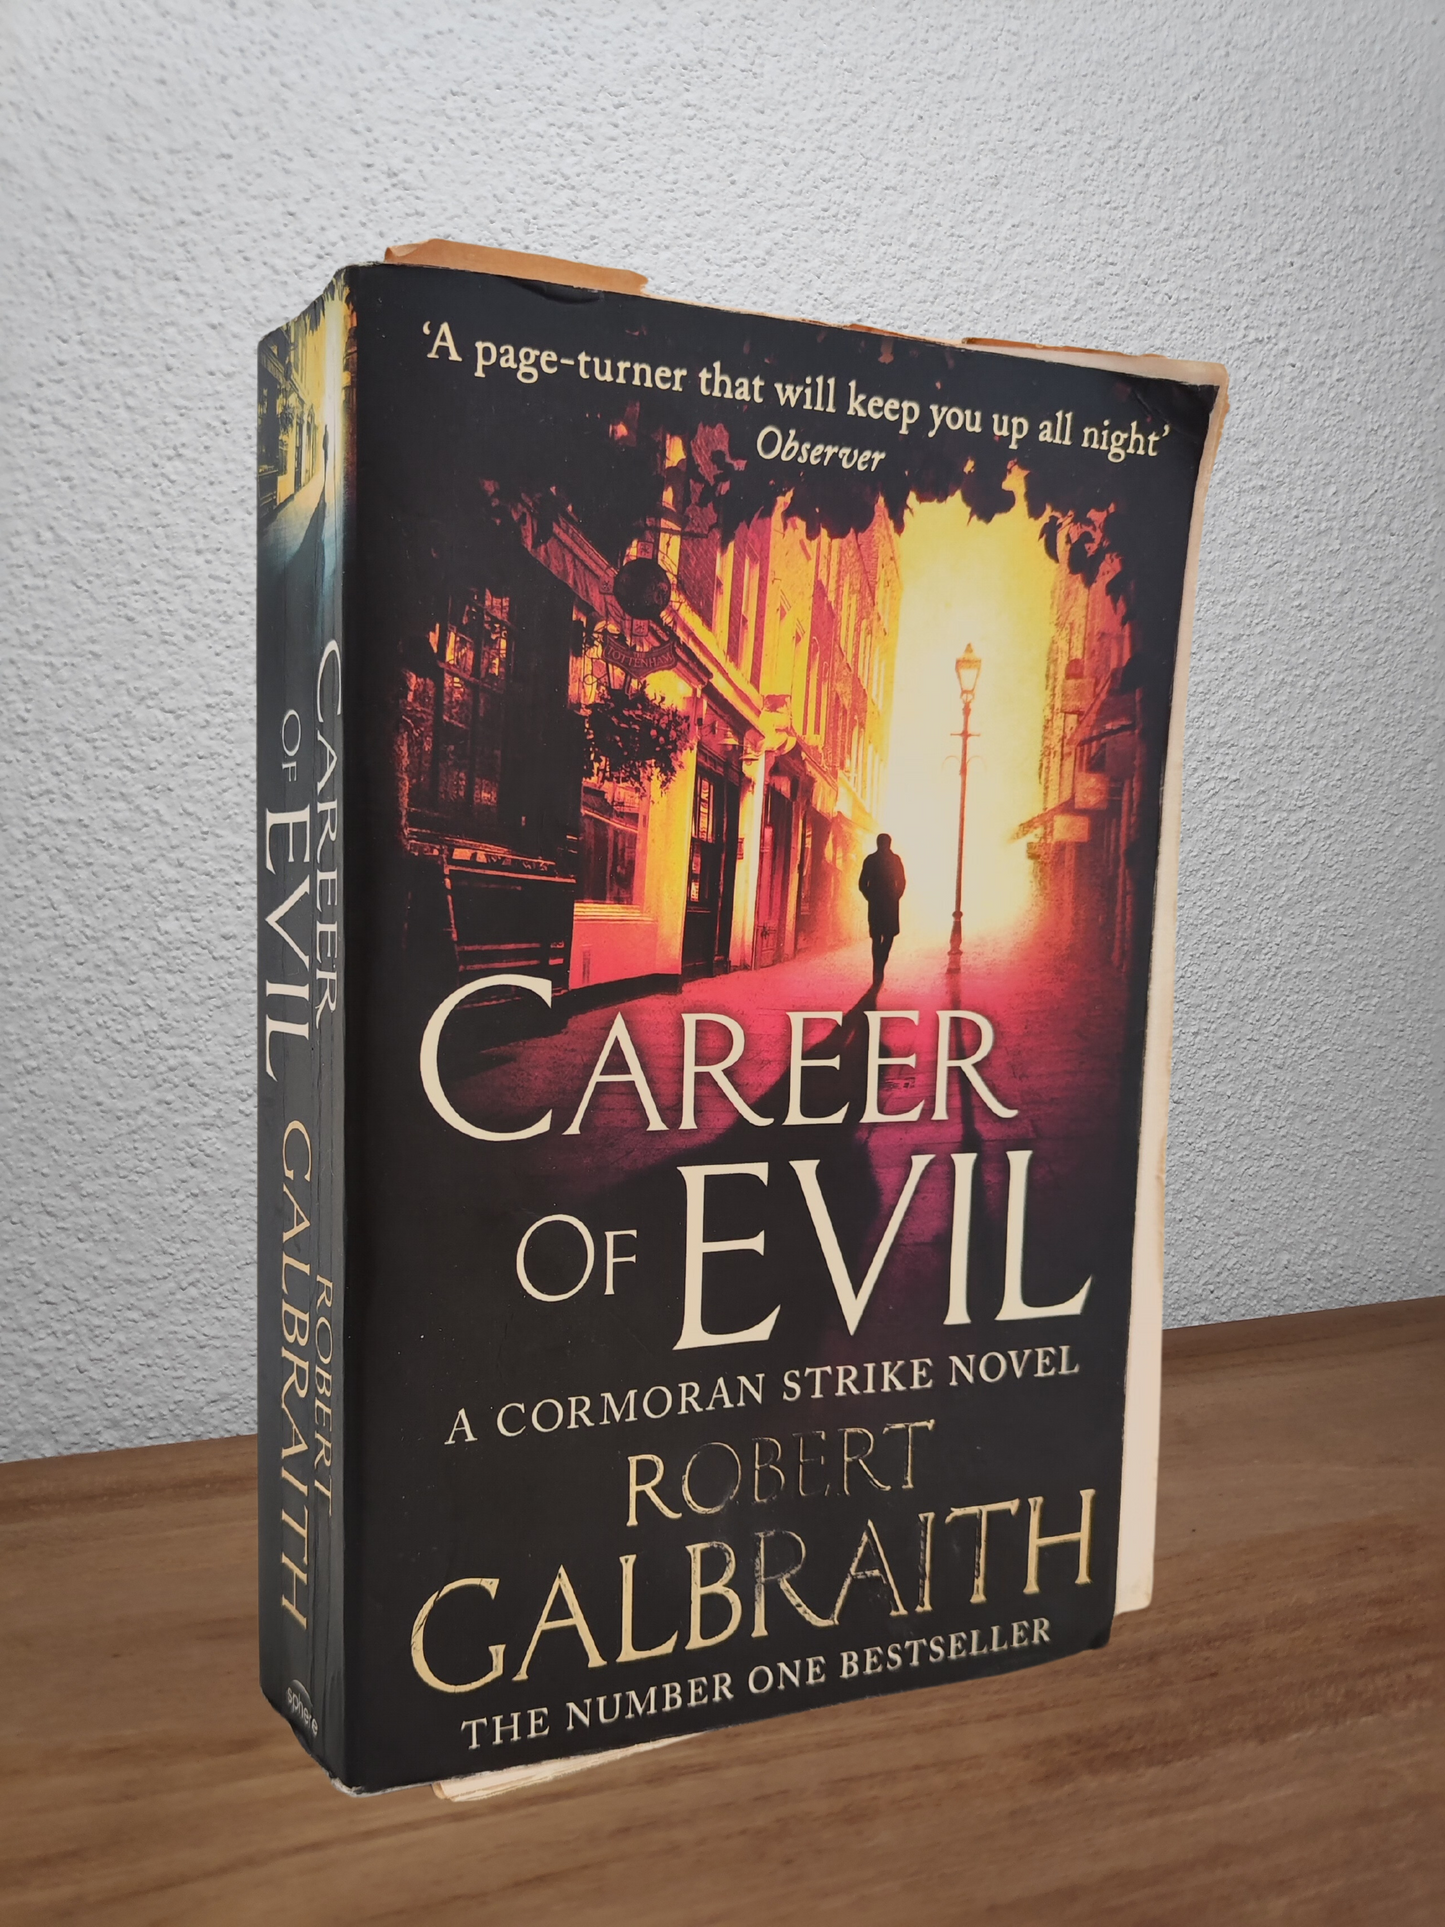 Robert Galbraith - Career of Evil (Cormoran Strike #3)